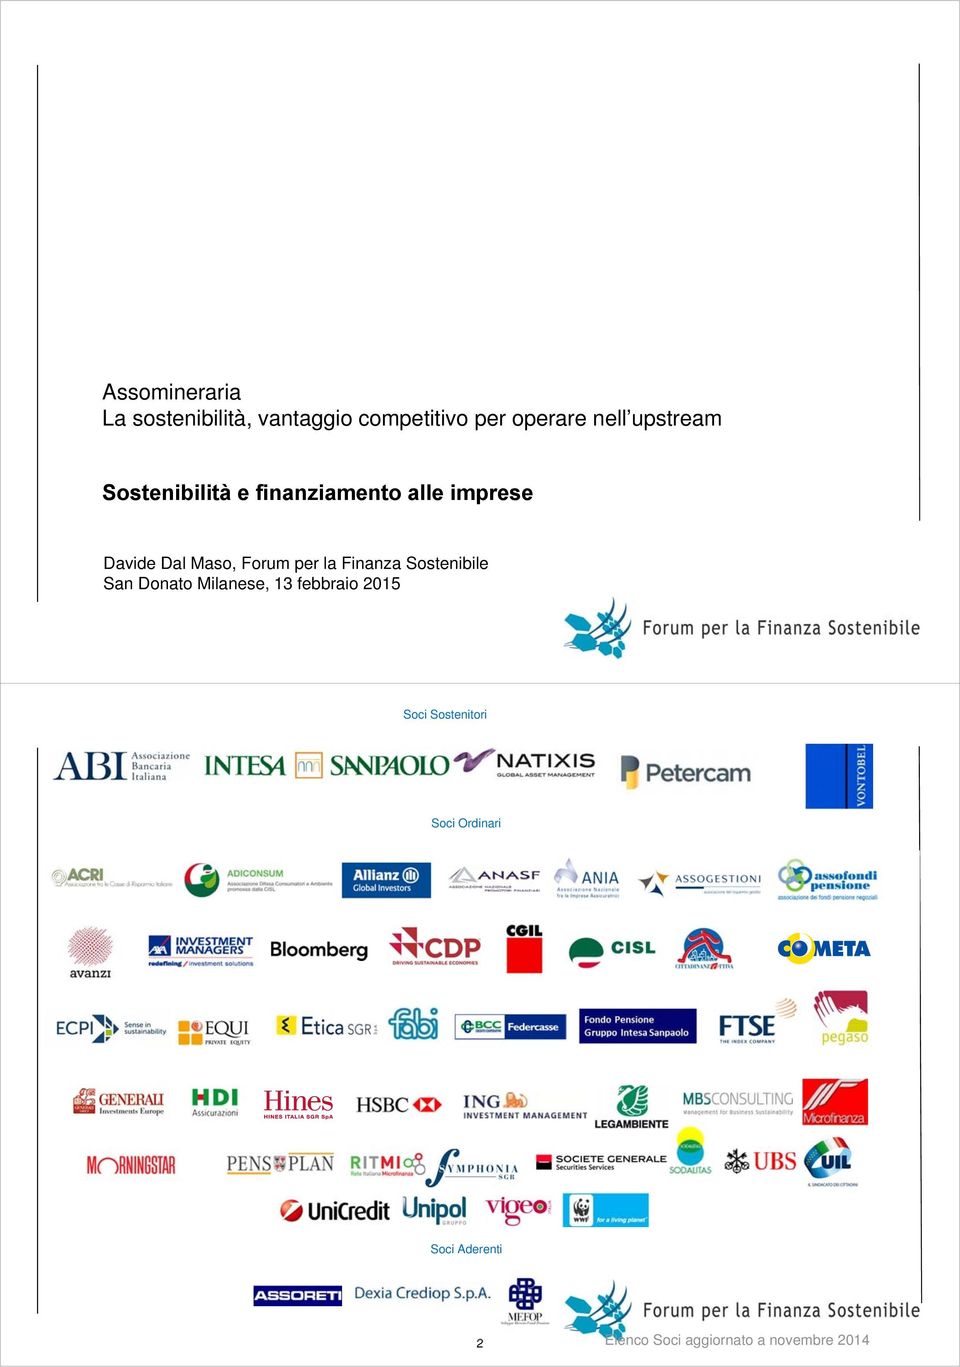 Forum per la Finanza Sostenibile San Donato Milanese, 13 febbraio 2015